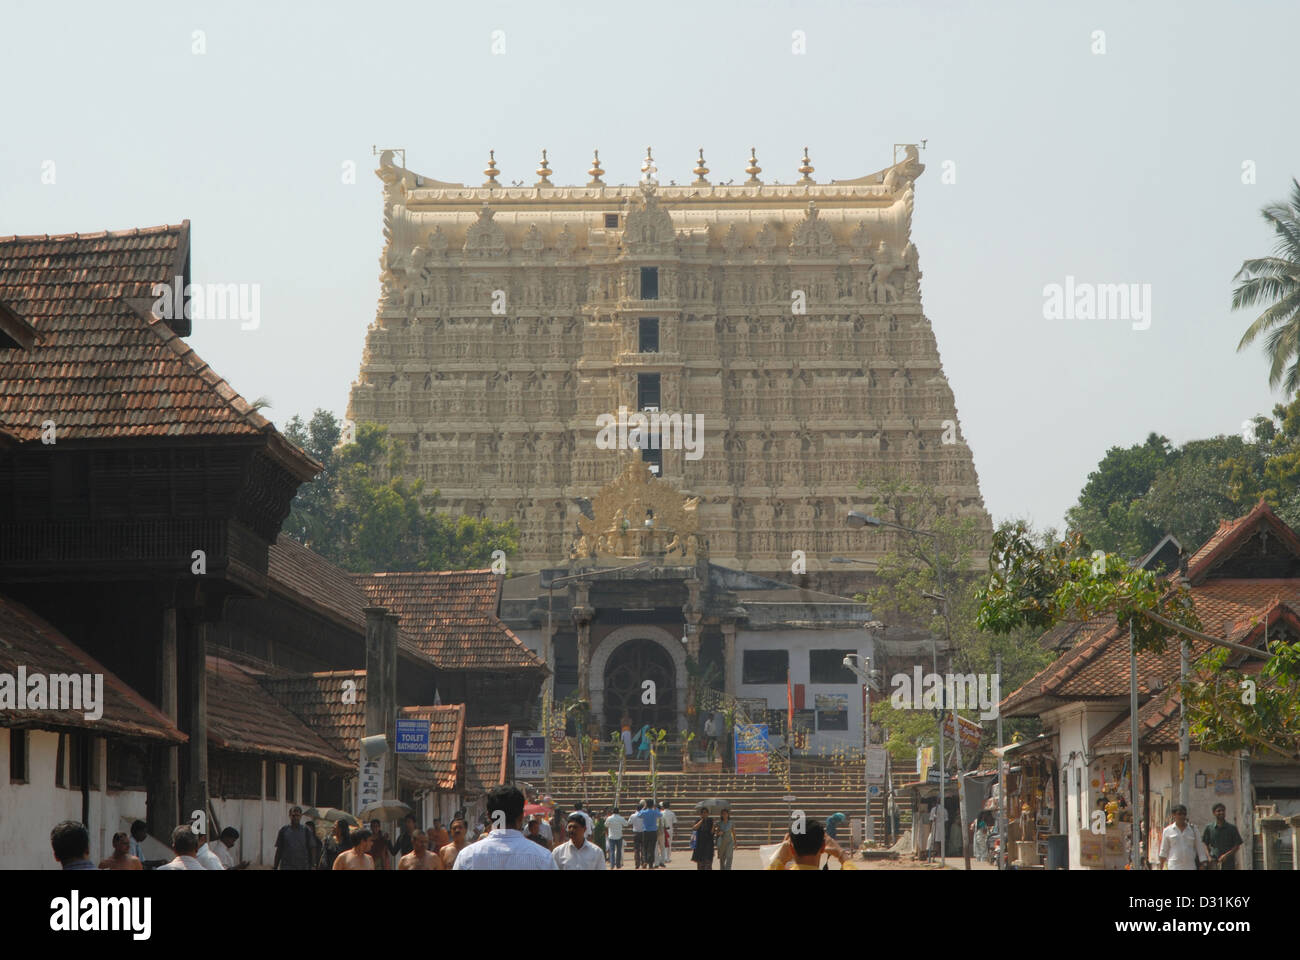 Closer View of the Gopuram, main entrance of Shri Padmanabhaswamy temple, Thiruvananthapuram, India. Stock Photo